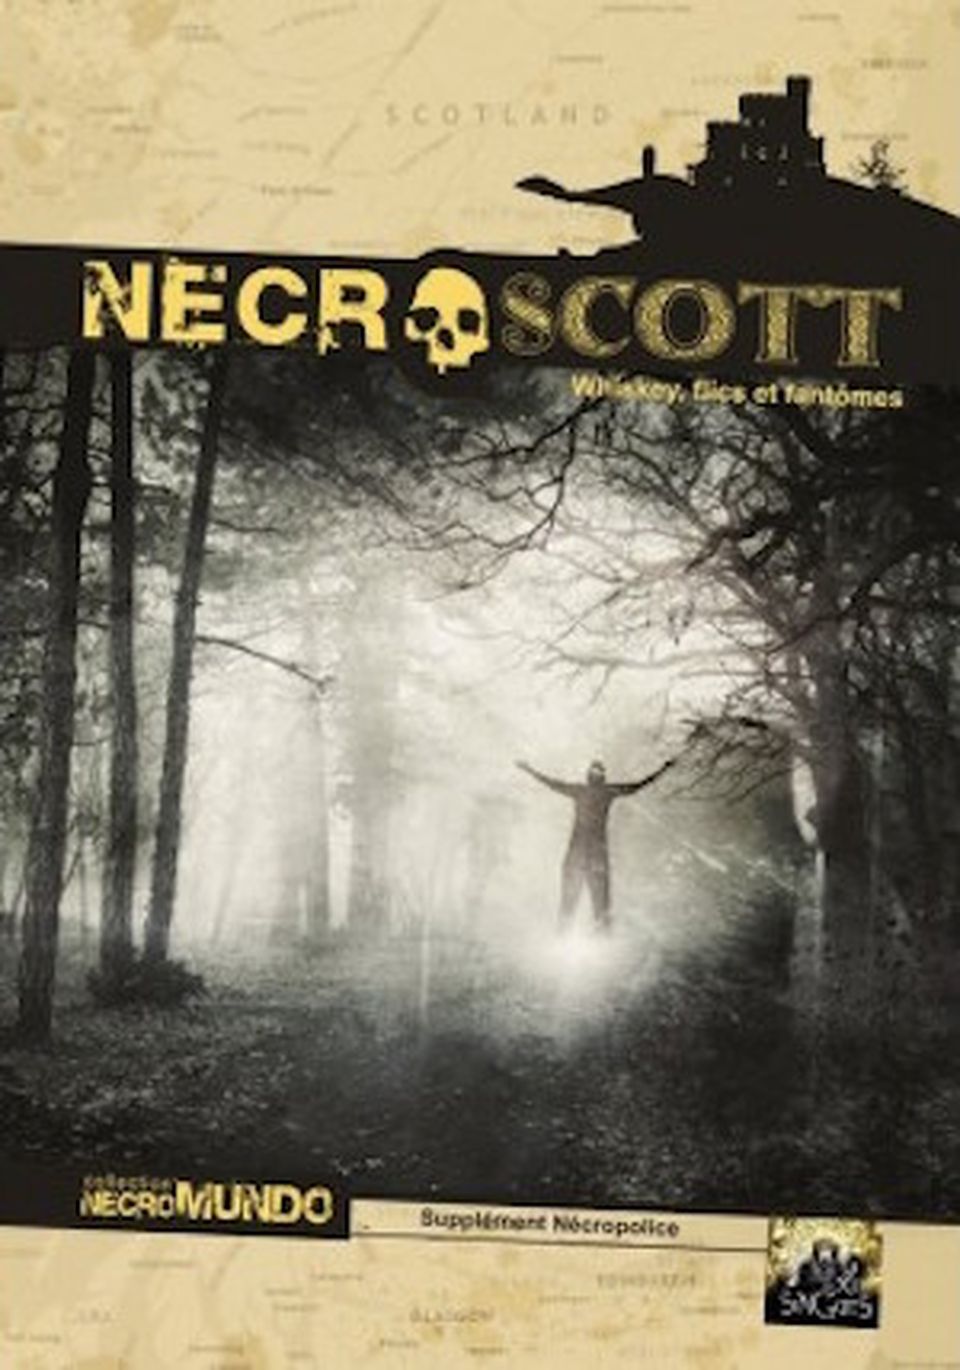 Necropolice Necromundo : NecroScott image